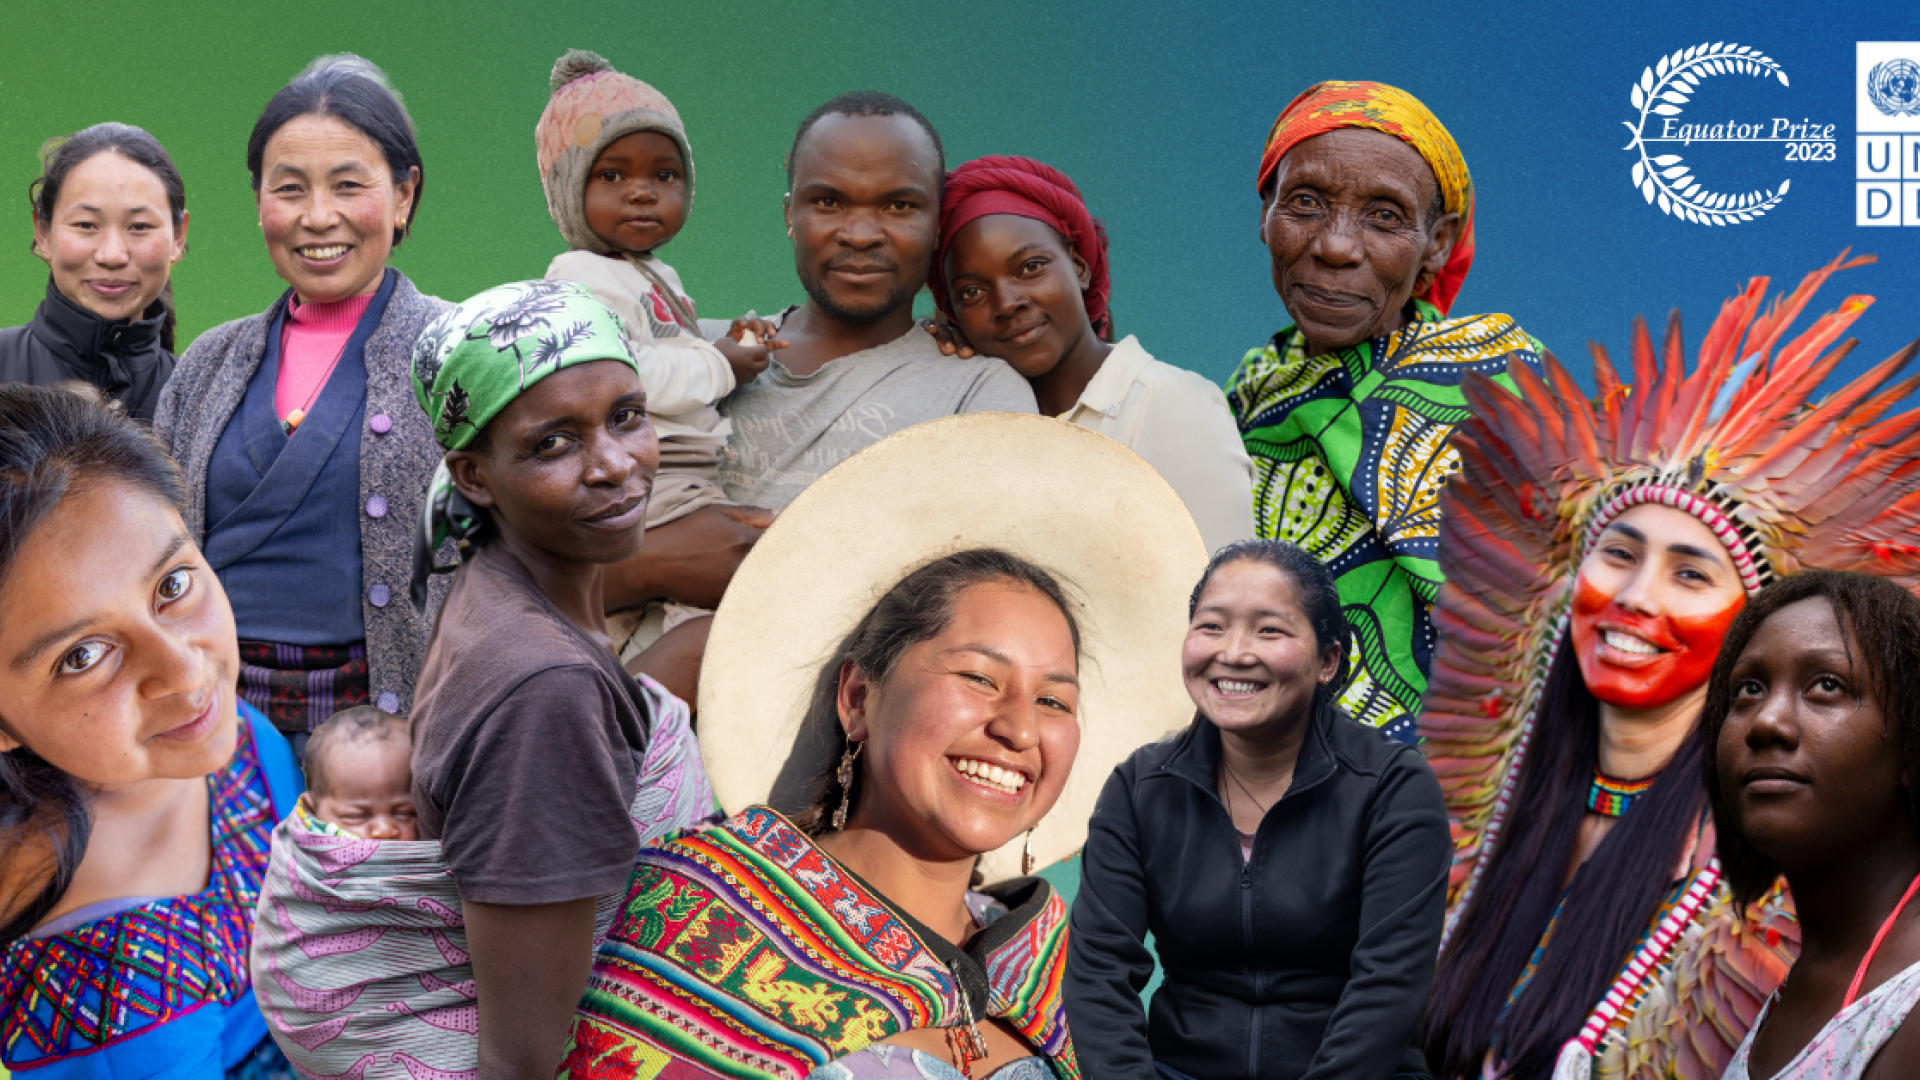 14° Premio Ecuador honra a 10 comunidades indígenas globales